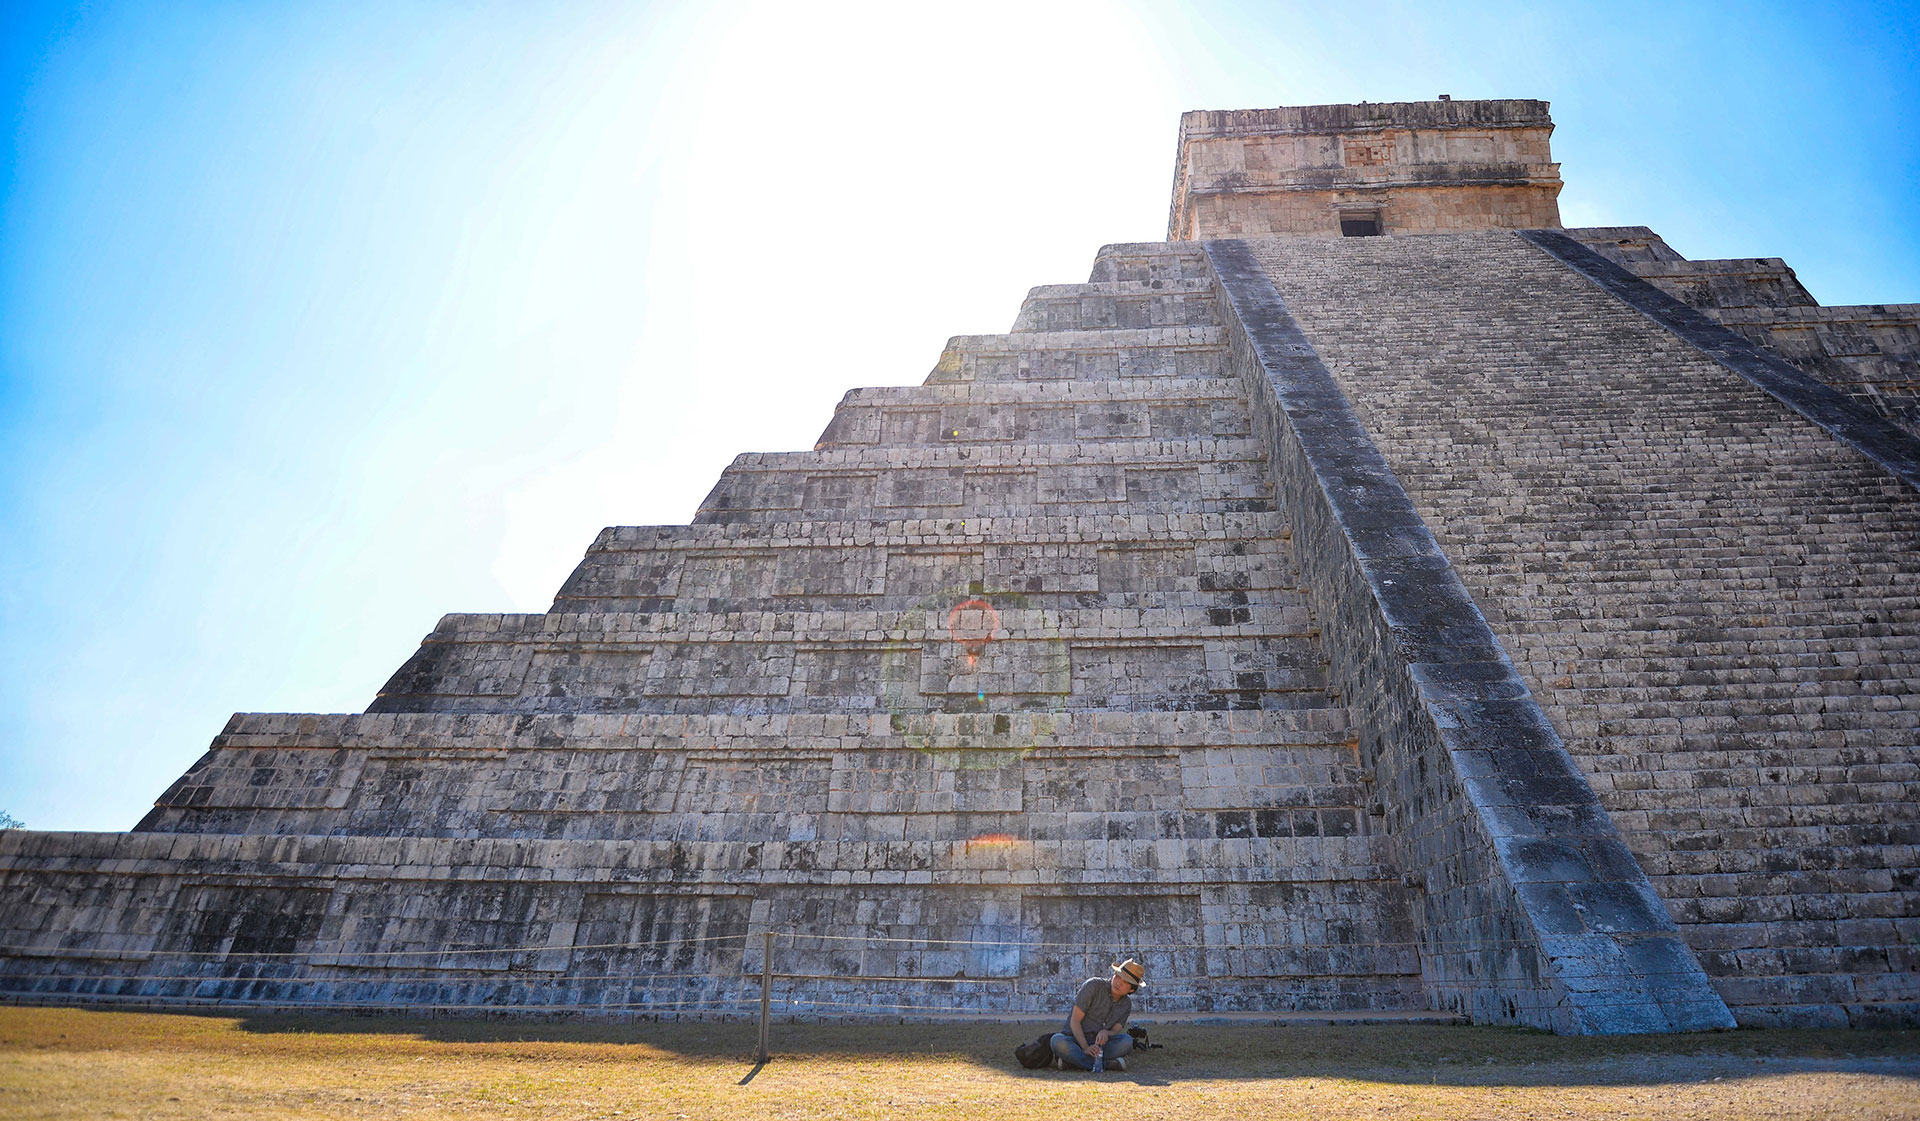 Historia de Chichén Itzá